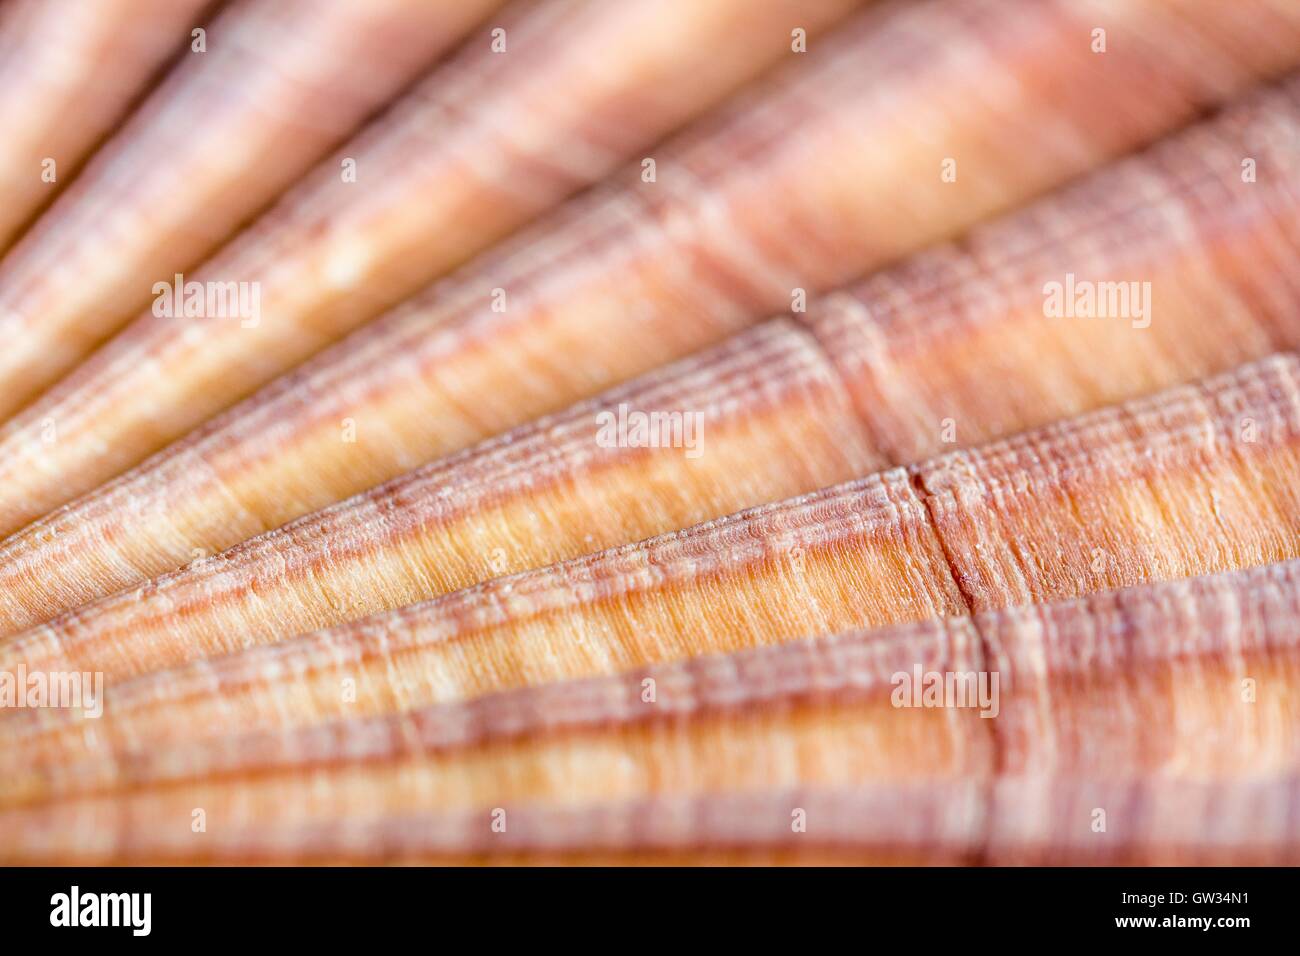 Rosso-smerlo nervata shell, macrophotograph. Il guscio di un rosso-smerlo nervata (Aequipecten glyptus), un marine molluschi bivalvi. I gusci dei molluschi bivalvi sono costituiti da due parti di articolazione o valvole. Orizzontale formato oggetto di questa sezione dell'immagine: 15 mm. Foto Stock